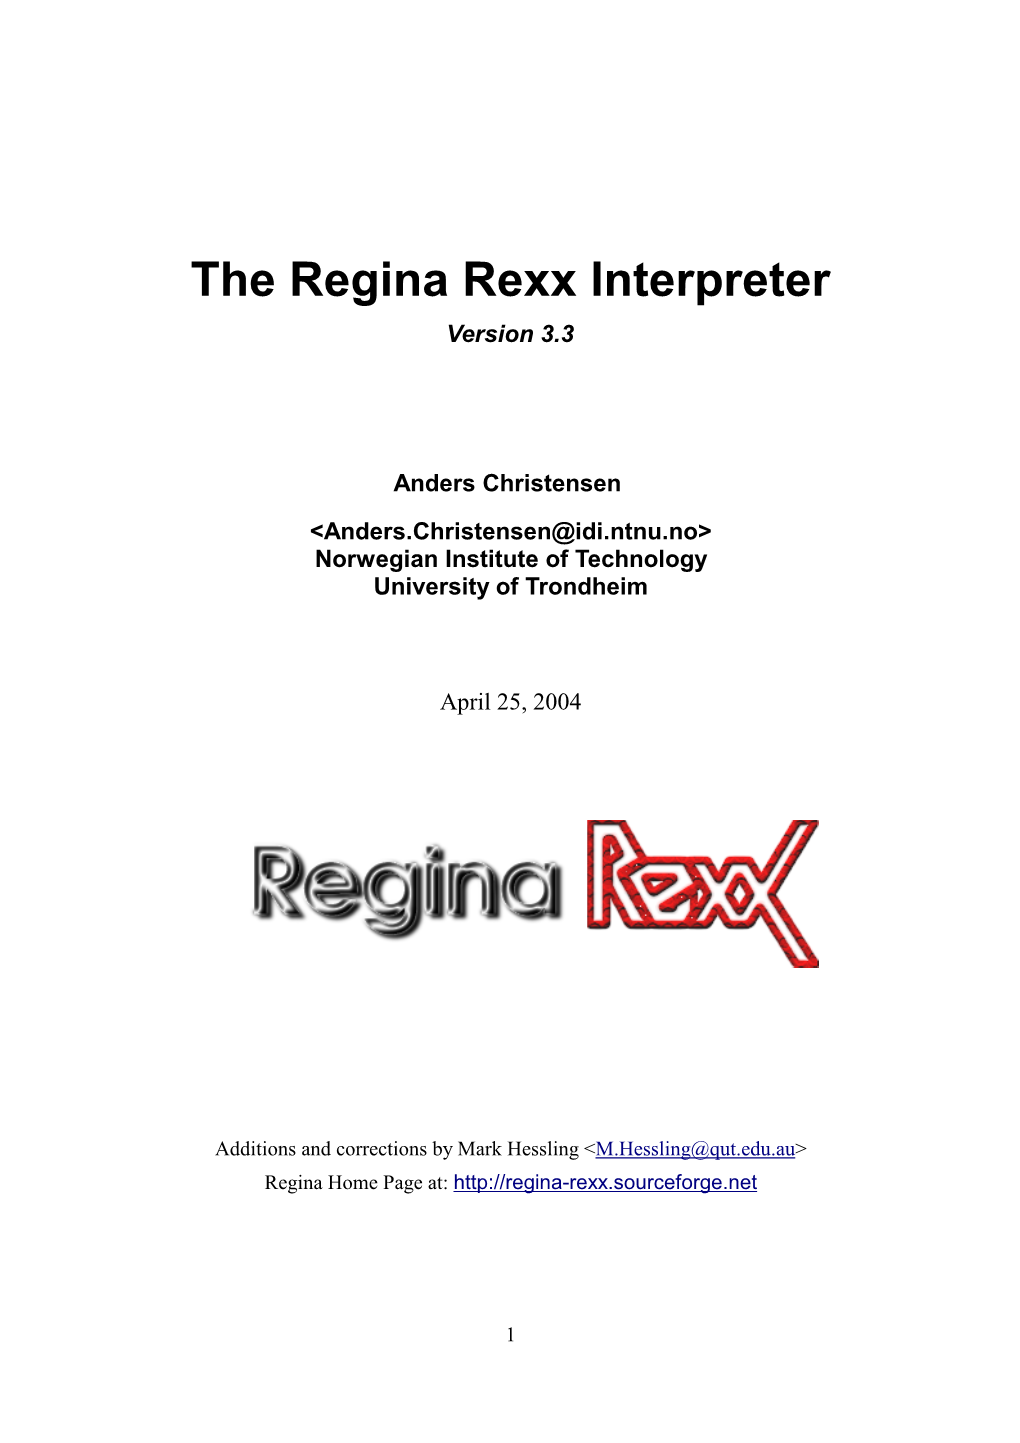 Regina Rexx Interpreter Version 3.3